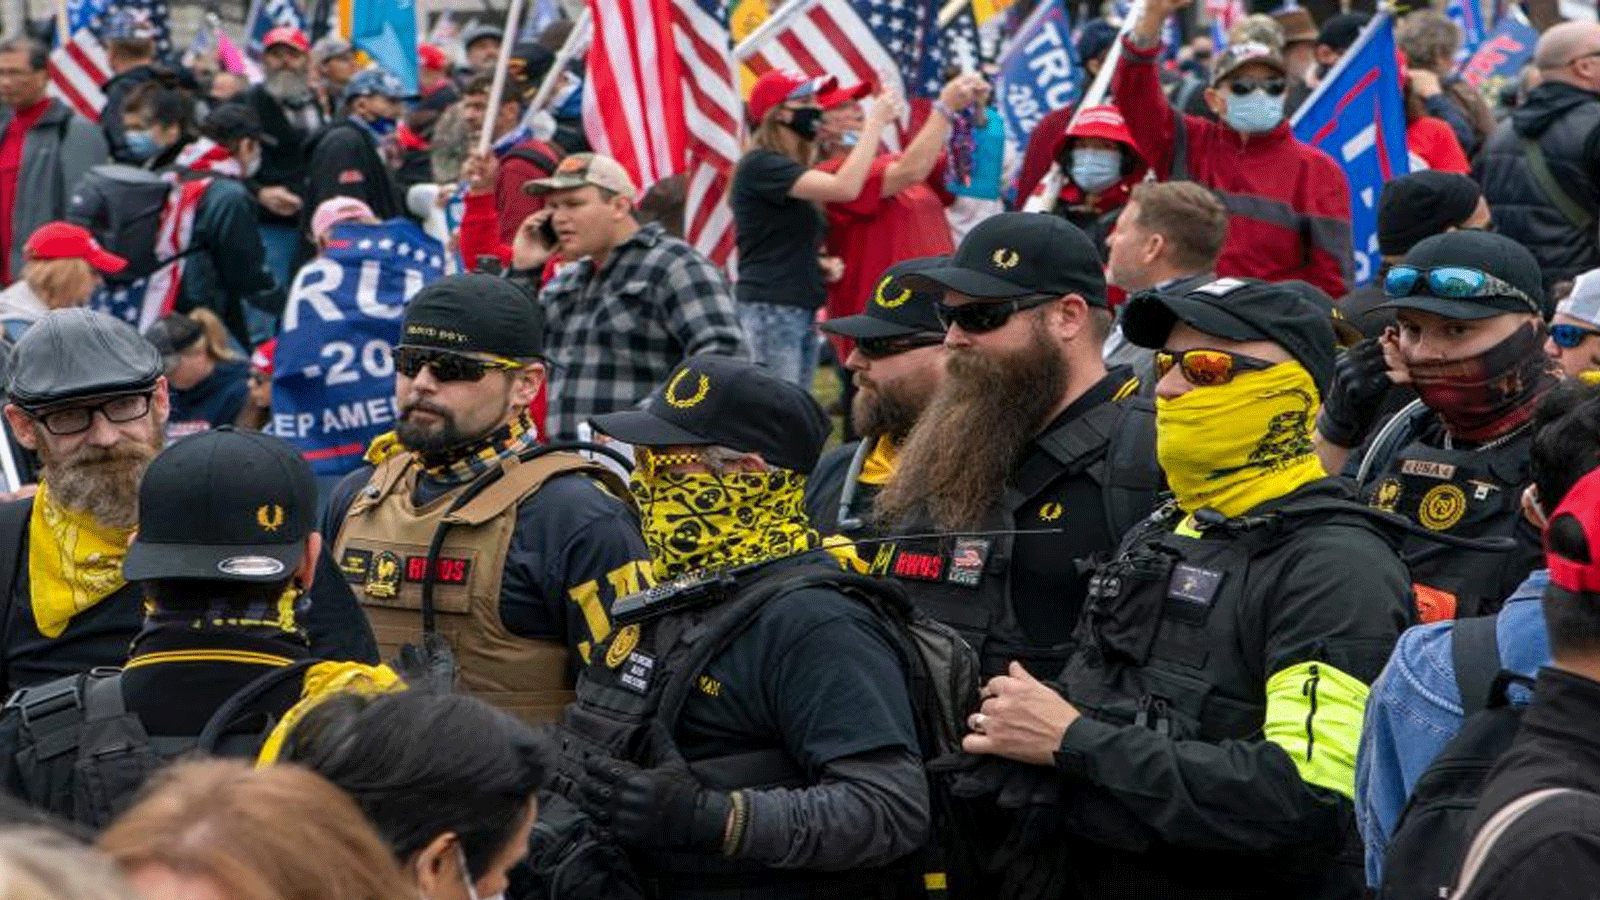 صورة تم التقاطها في 12 كانون الأول\ديسمبر 2020، ينضم أعضاء من Proud Boys إلى مؤيدي الرئيس الأميركي دونالد ترامب أثناء مظاهرة في واشنطن العاصمة